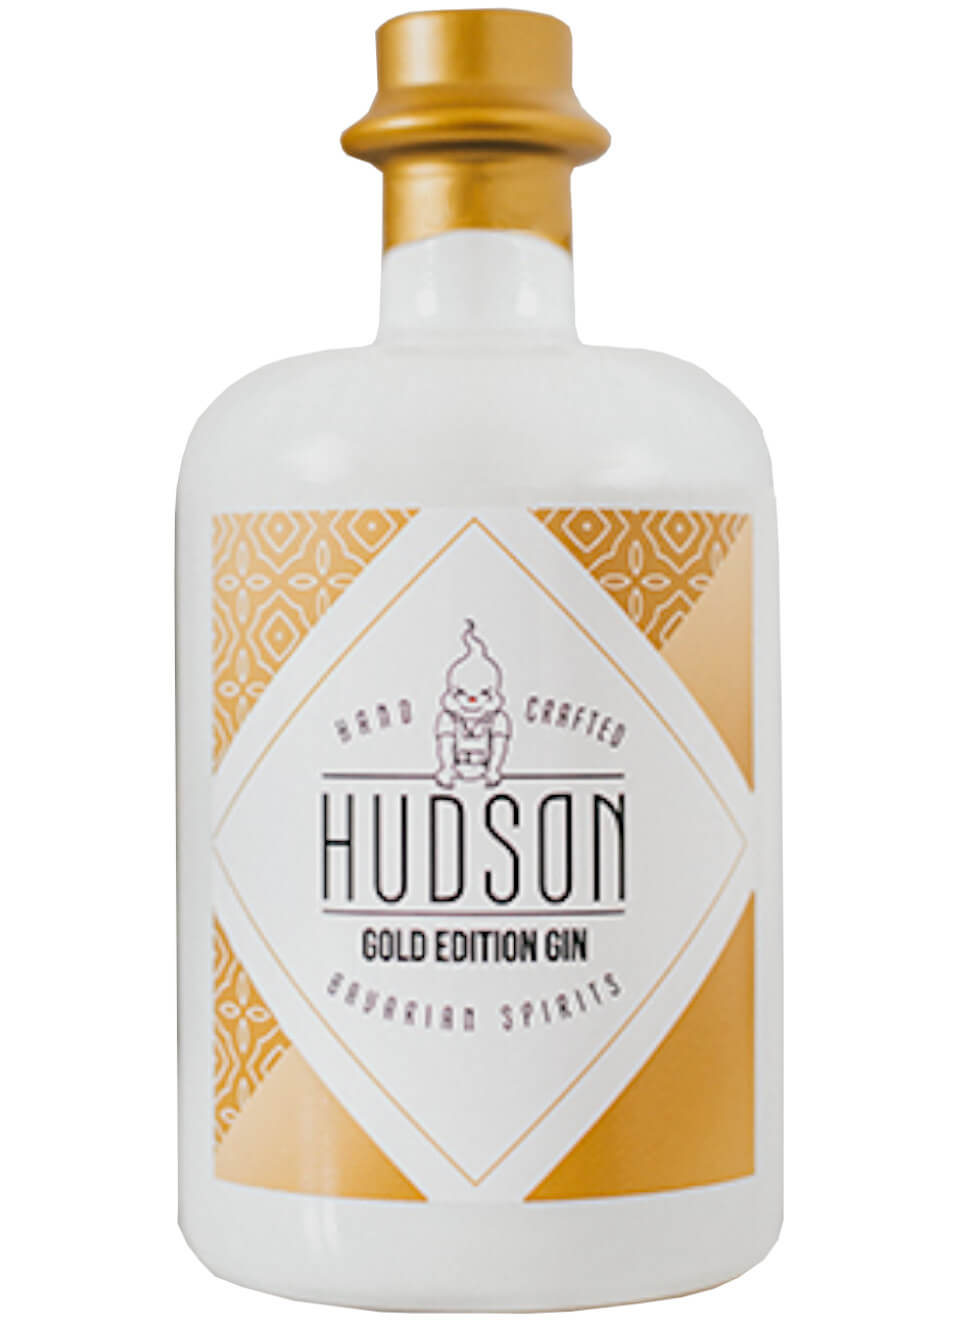 Hudson Gin Gold Edition 0,5 Liter kaufen